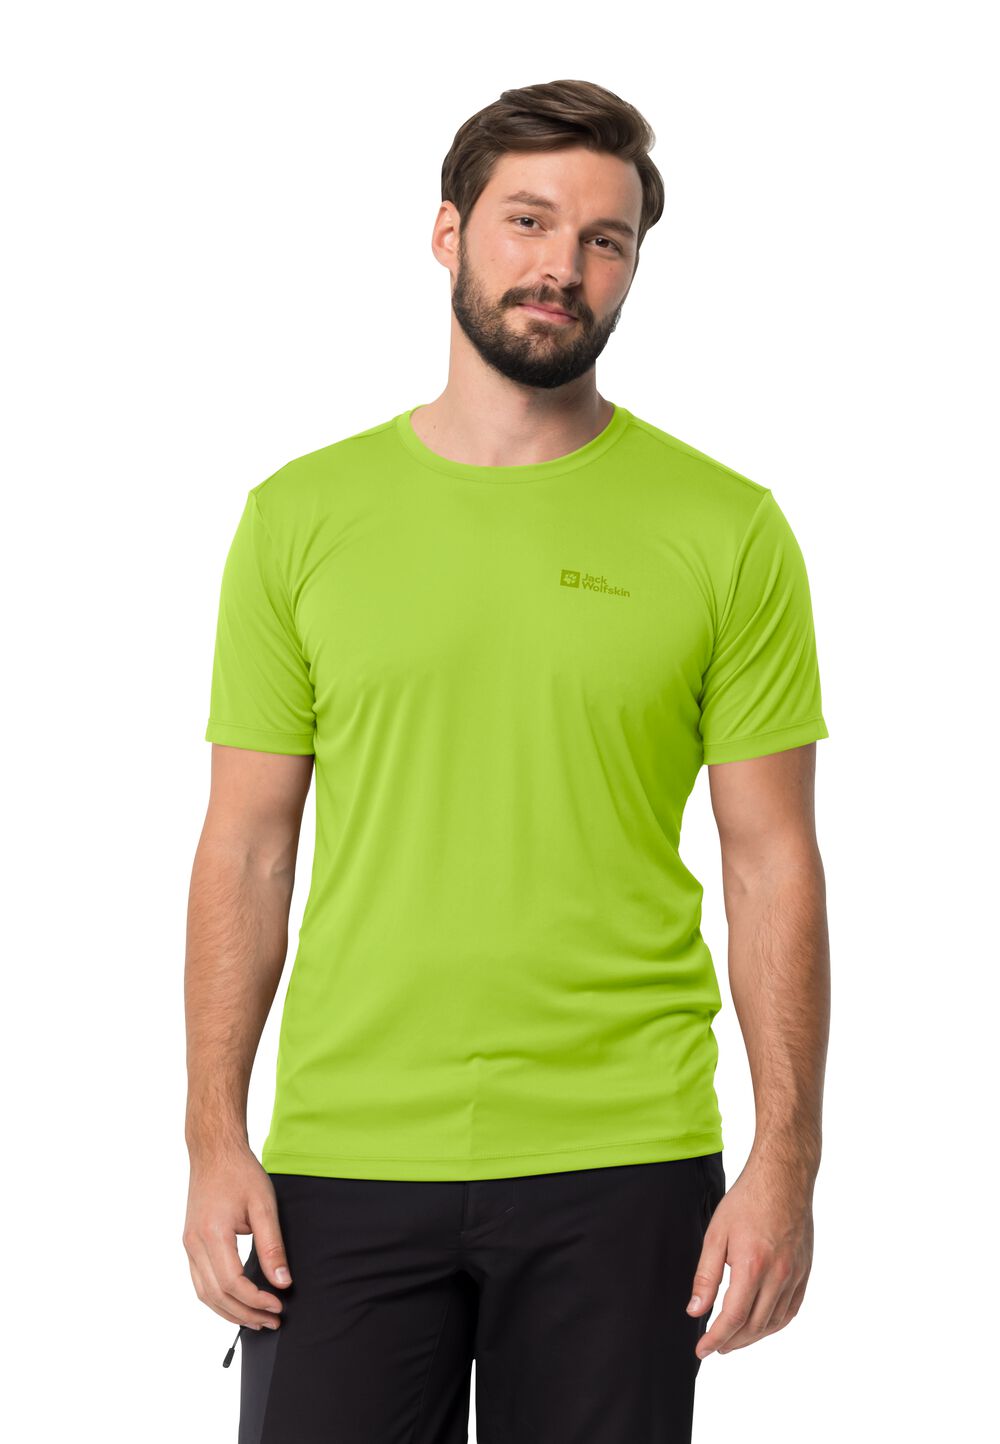 Jack Wolfskin Funktionsshirt Herren Tech T-Shirt Men S fresh green fresh green von Jack Wolfskin